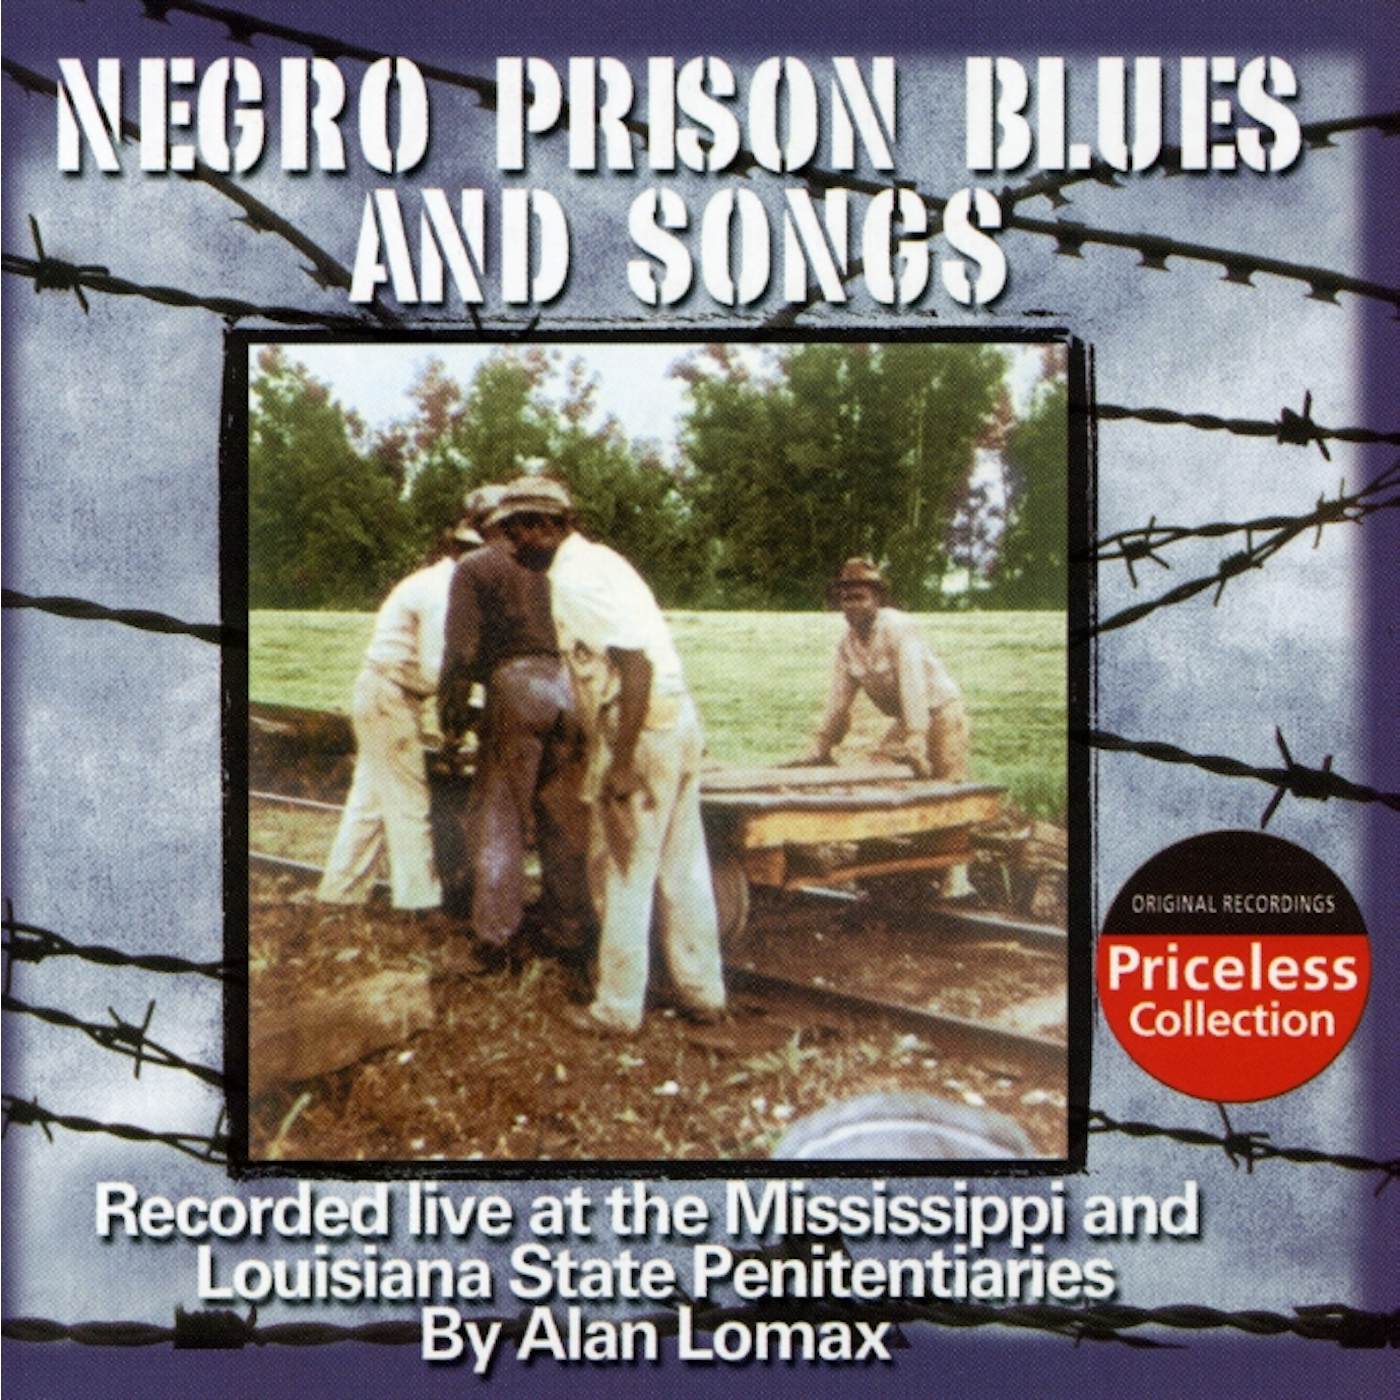 Alan Lomax SOUTHERN PRISON BLUES & SONGS CD